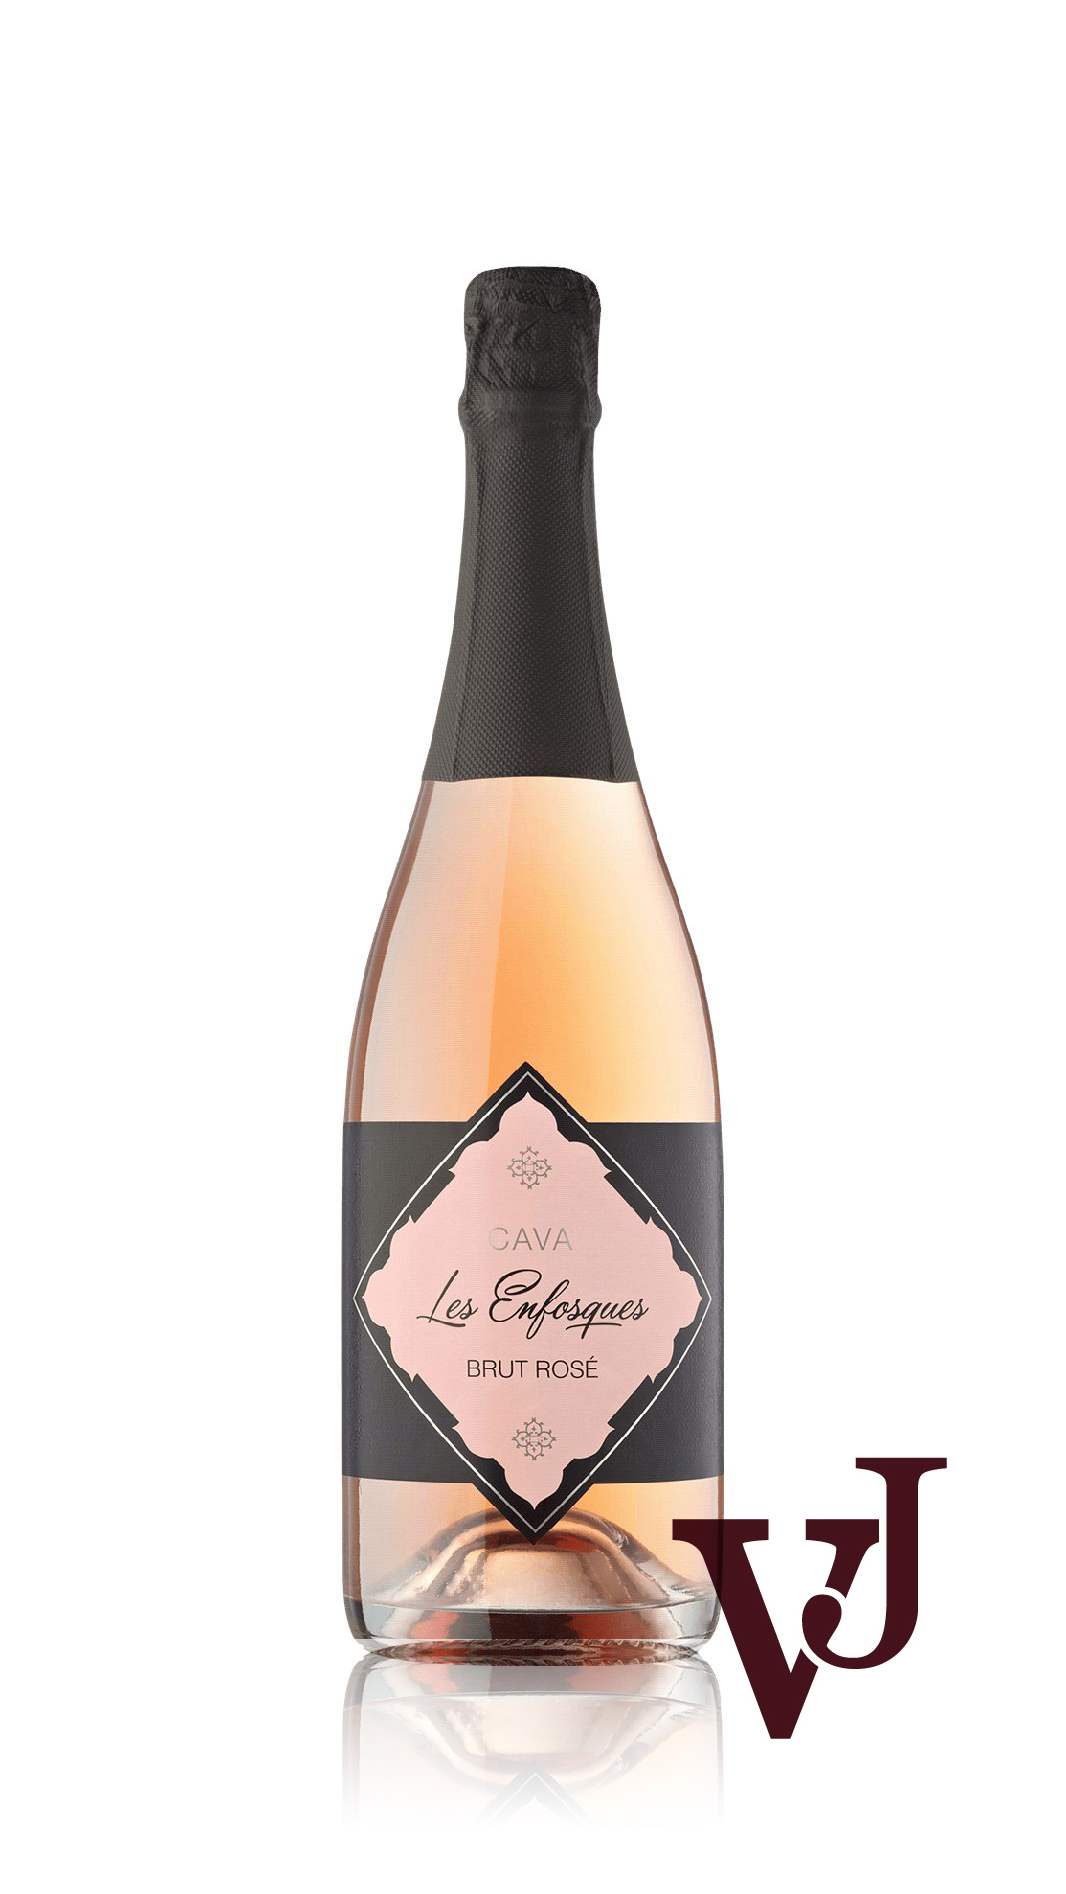 Mousserande Vin - Les Enfosques Cava Brut Rosé artikel nummer 5135801 från producenten Mas Bertran från området Spanien